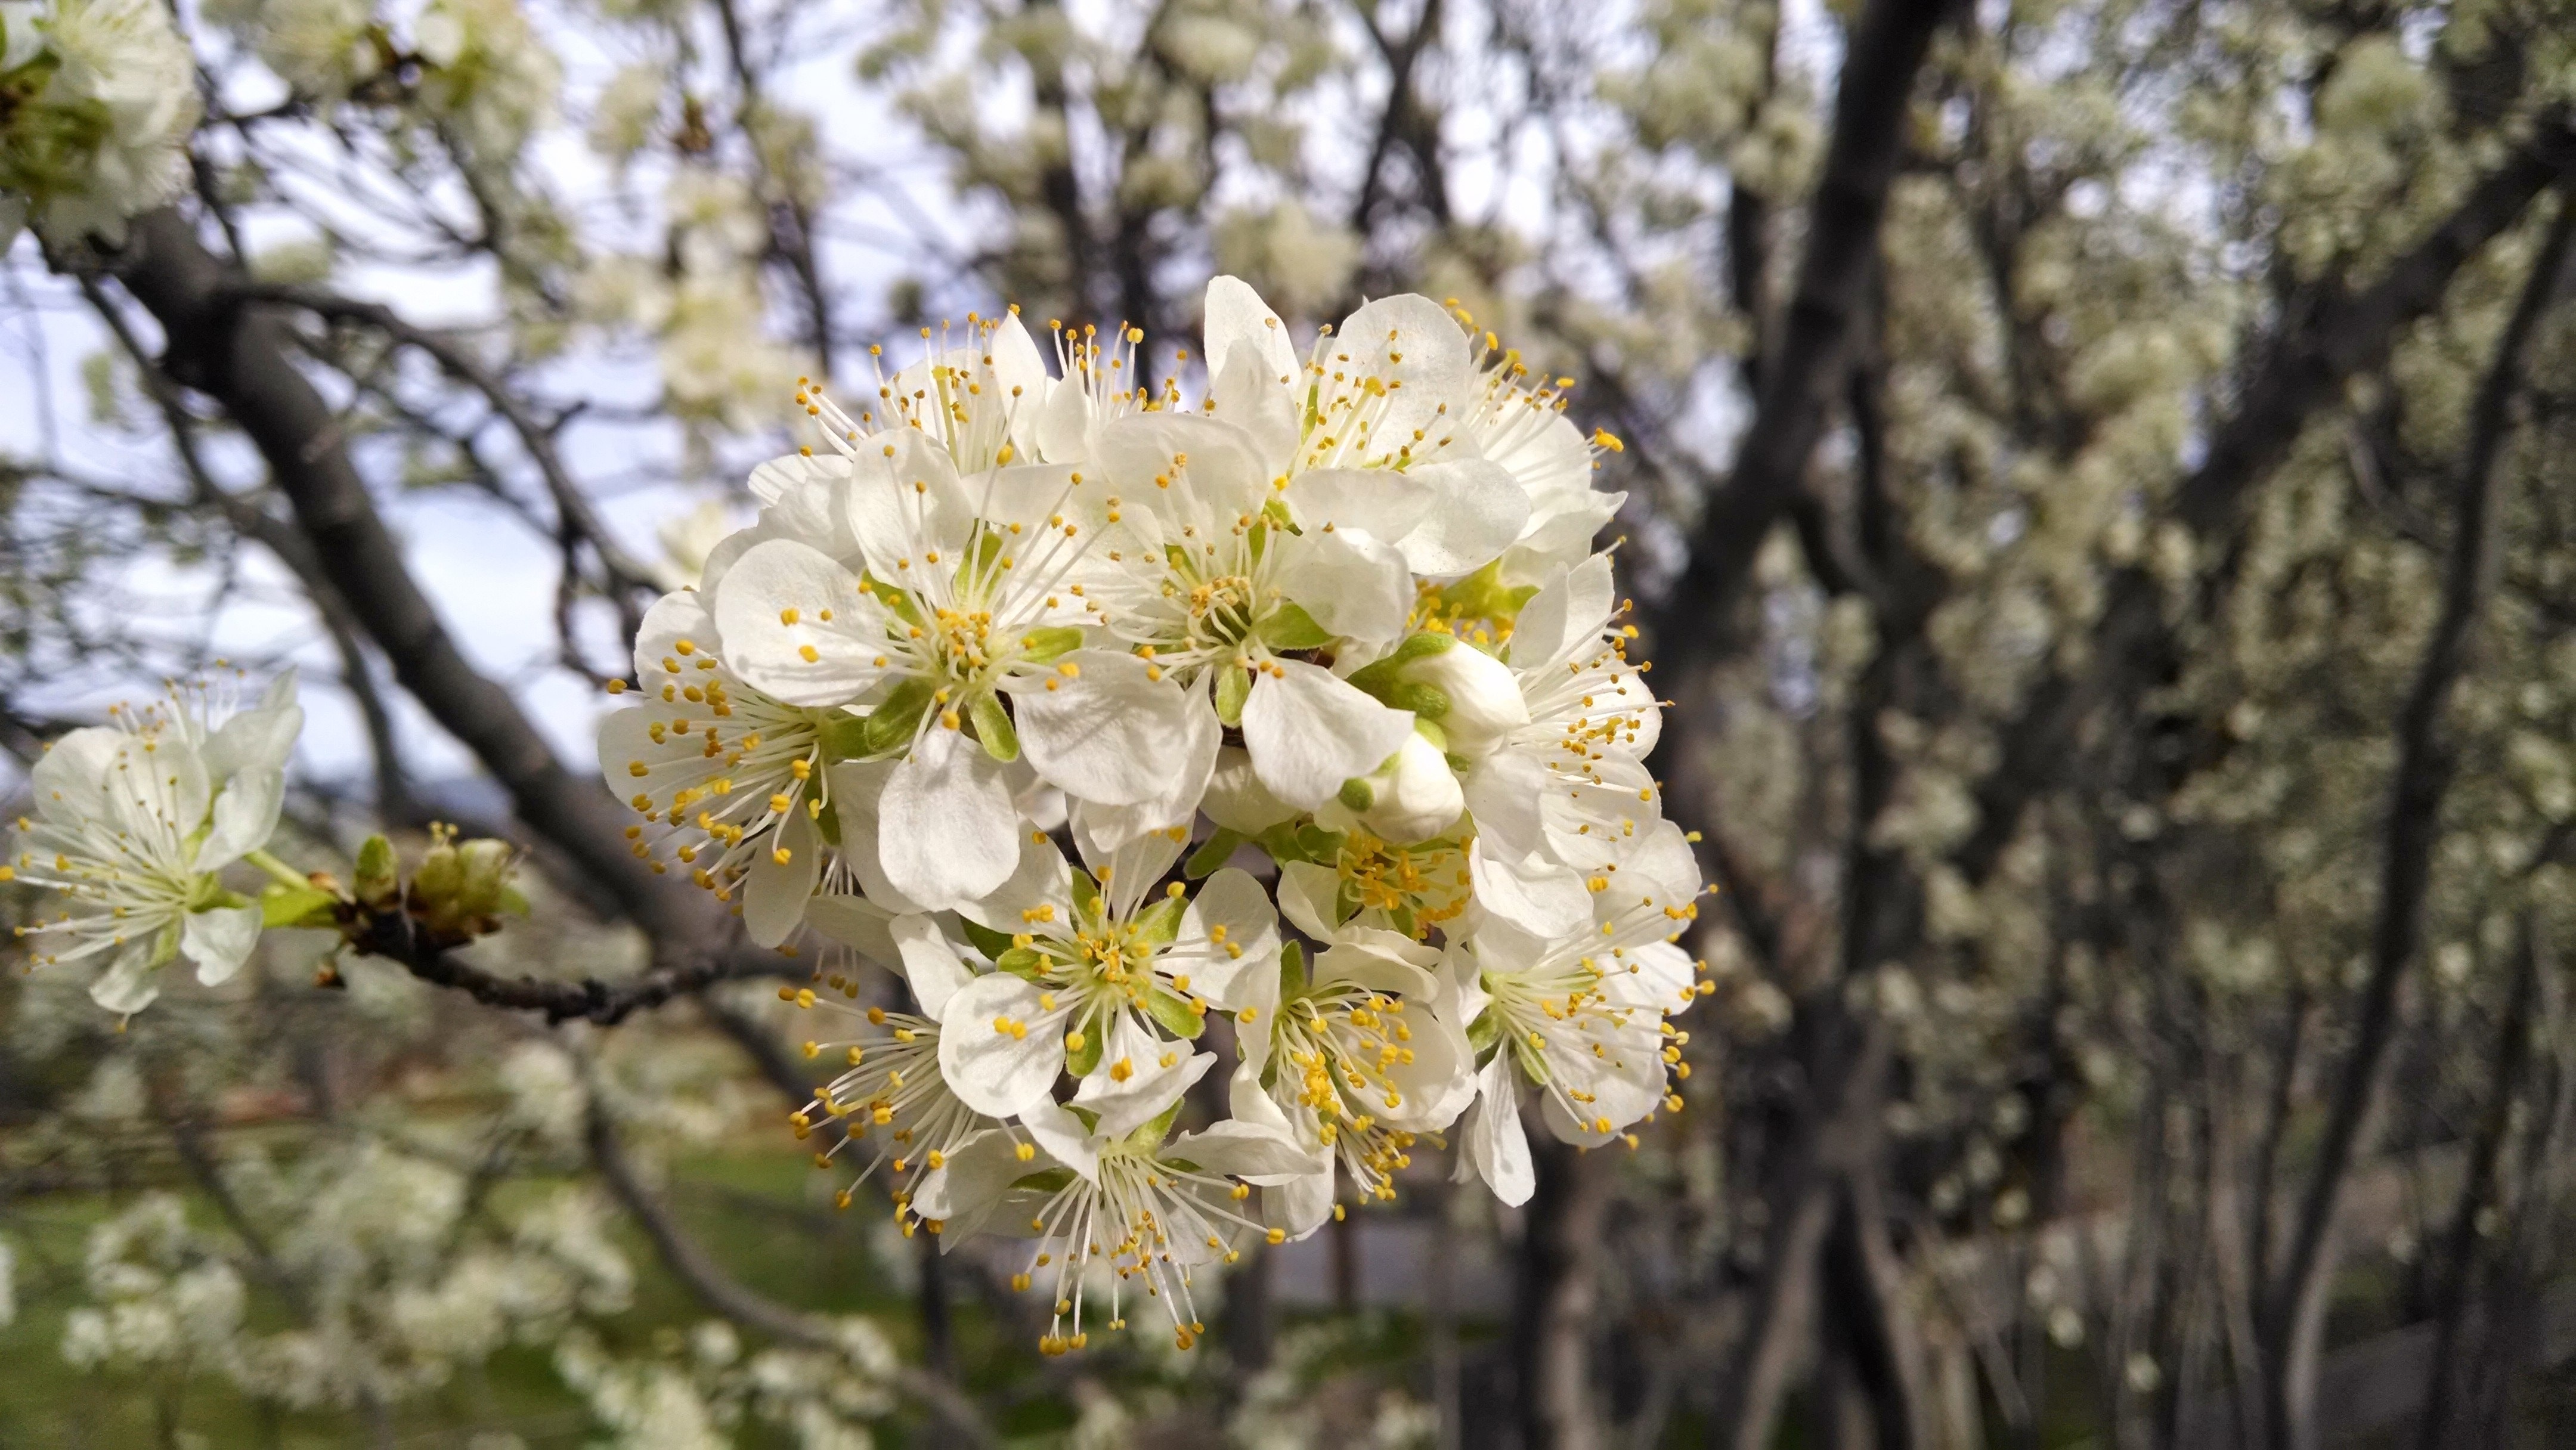 white cherry blossom flower